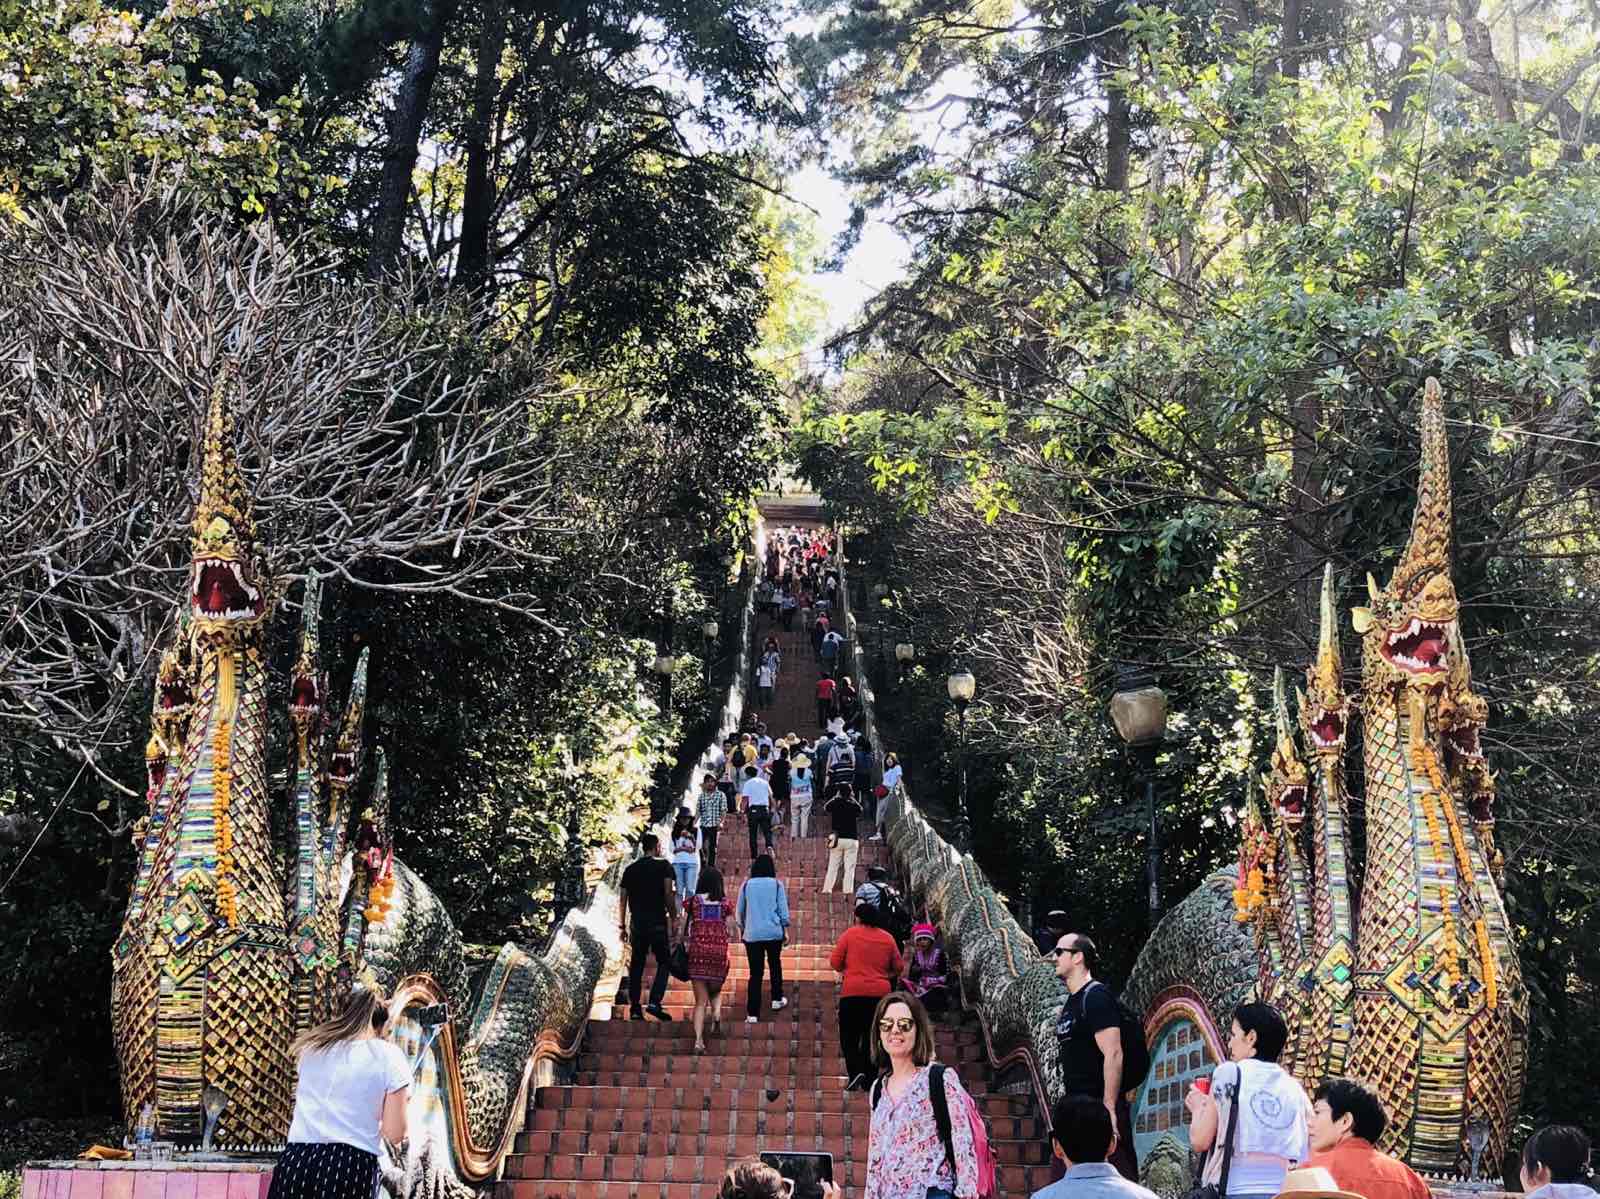 双龙寺建筑金碧辉煌 在阳光下越发显得灿烂 走过上山的阶梯 就到达双龙寺